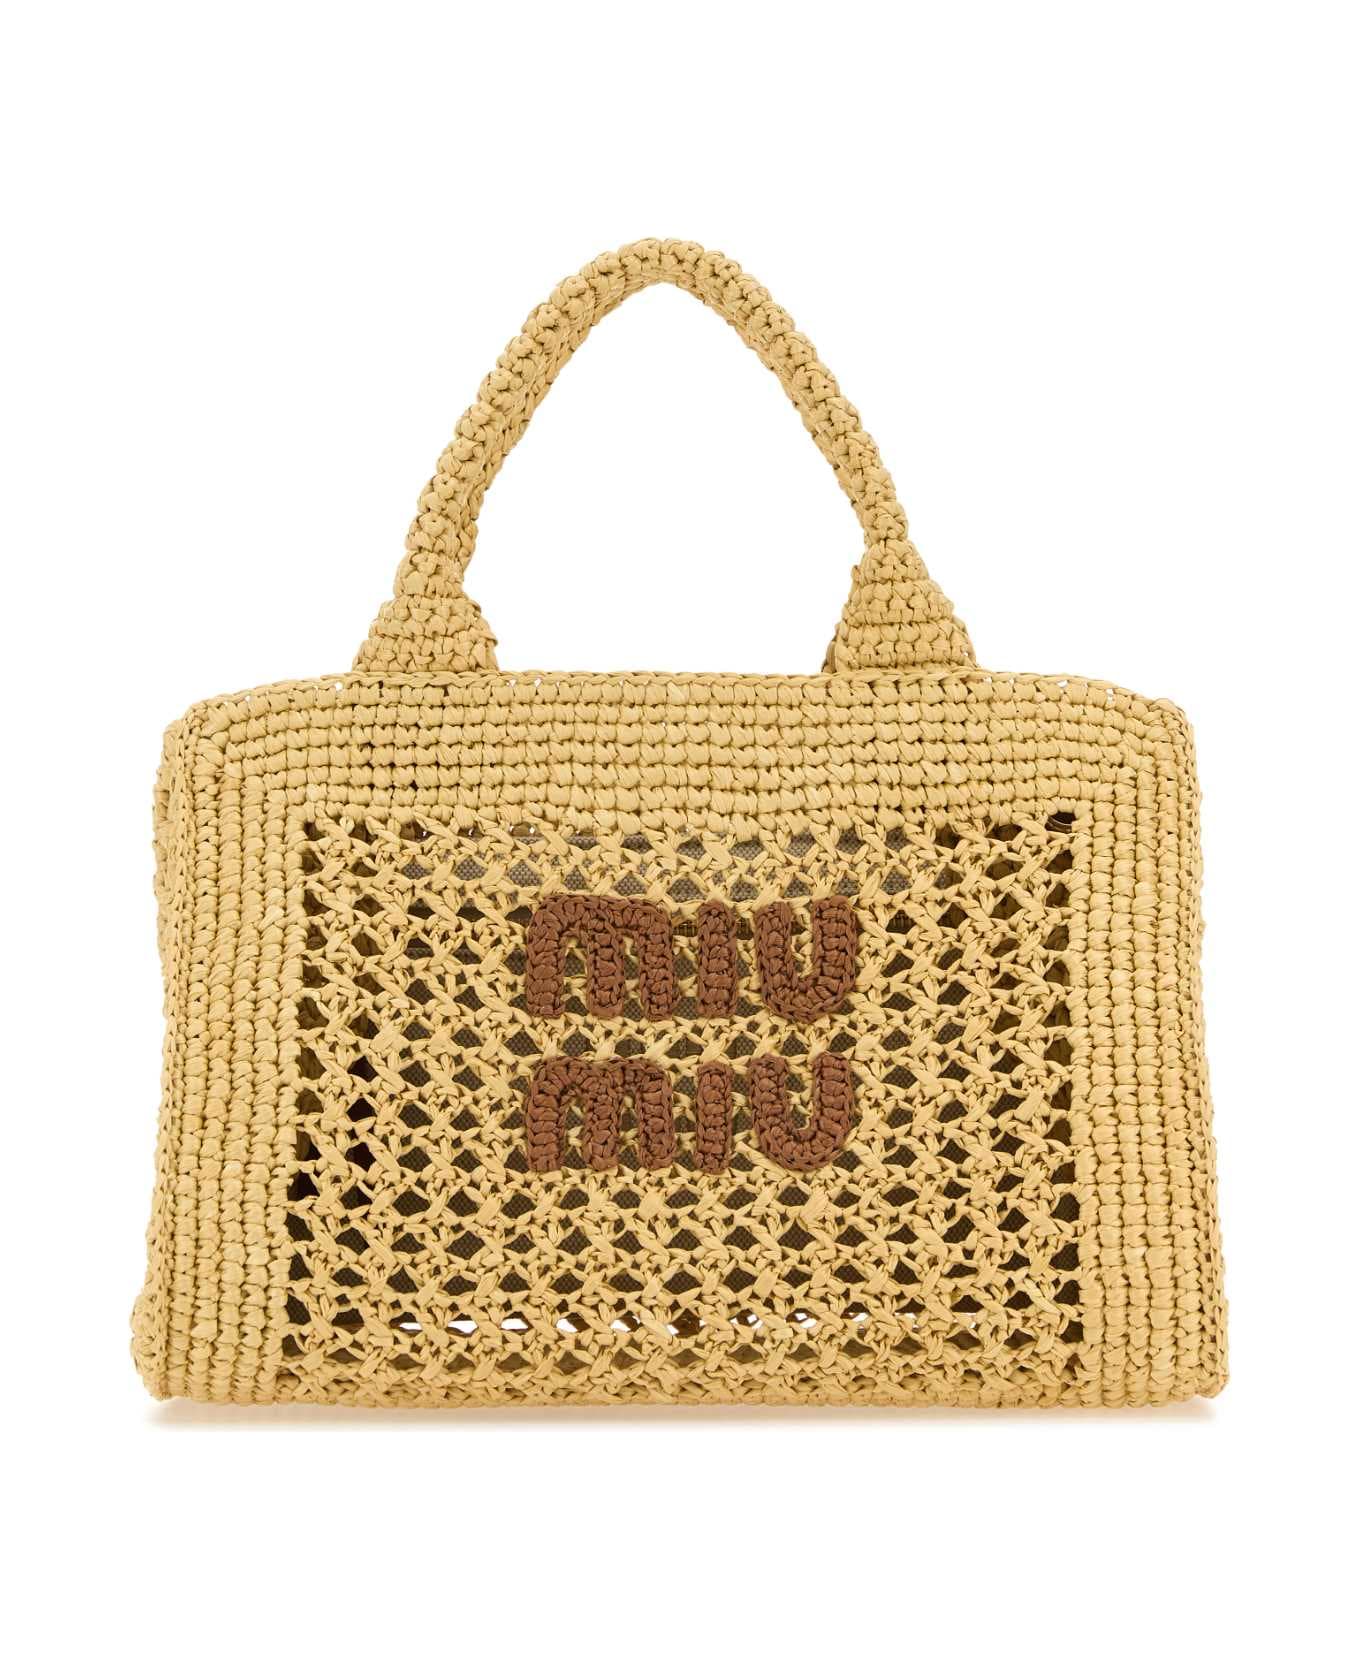 Miu Miu Beige Crochet Handbag - NATURALECOGNAC